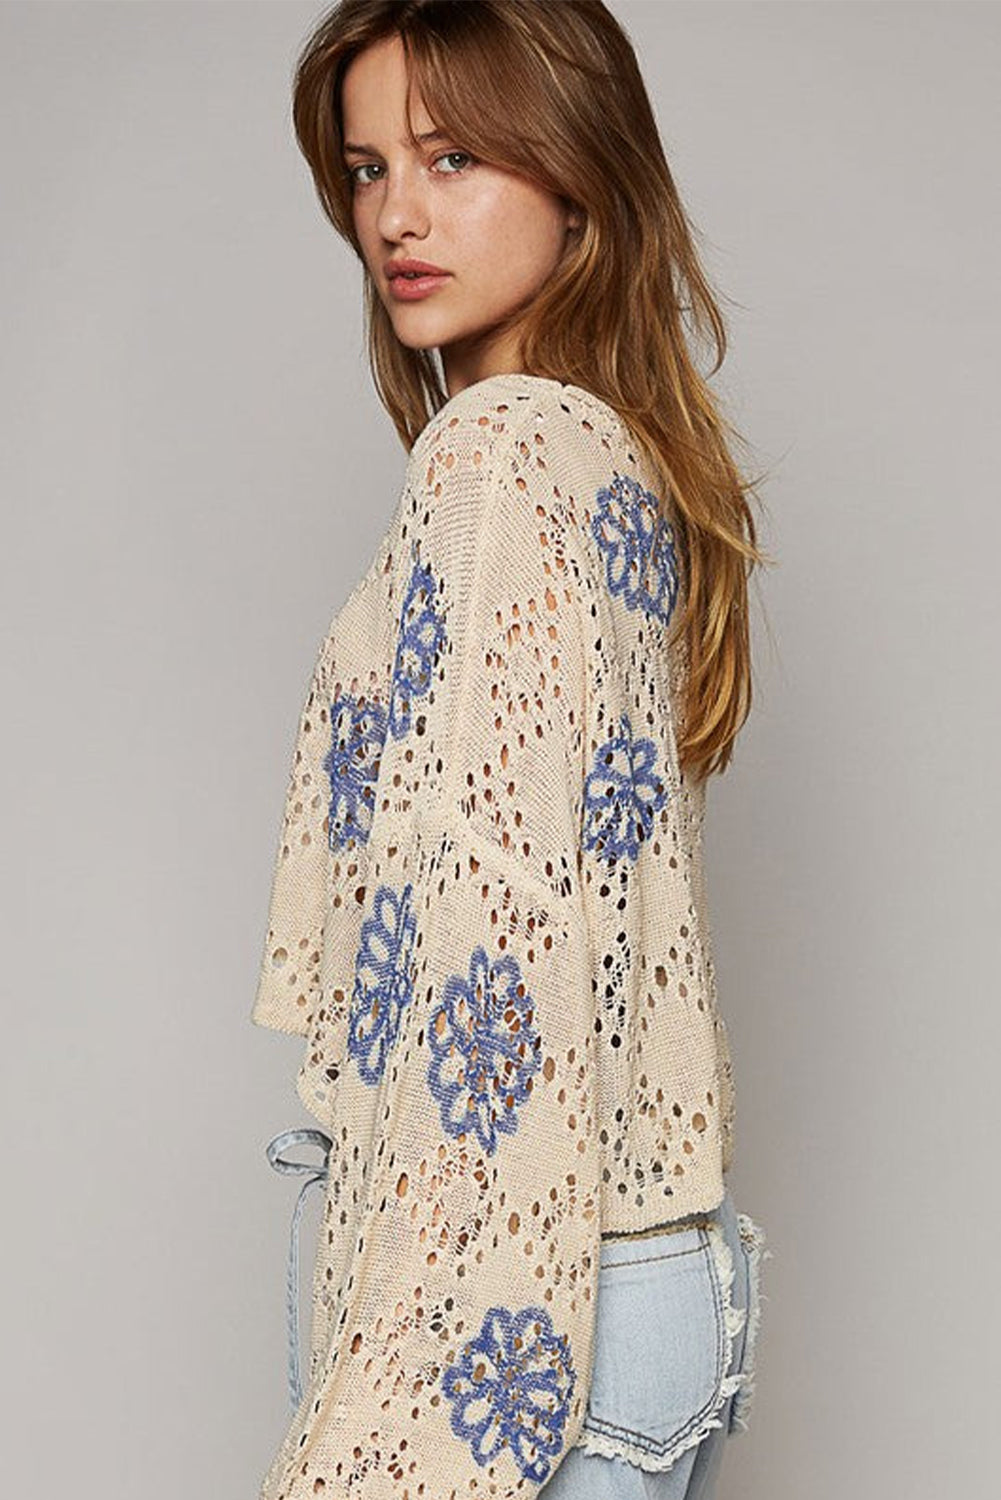 Beigefarbener Pullover mit kontrastierendem Blumenmuster und Ösen und überschnittener Schulter